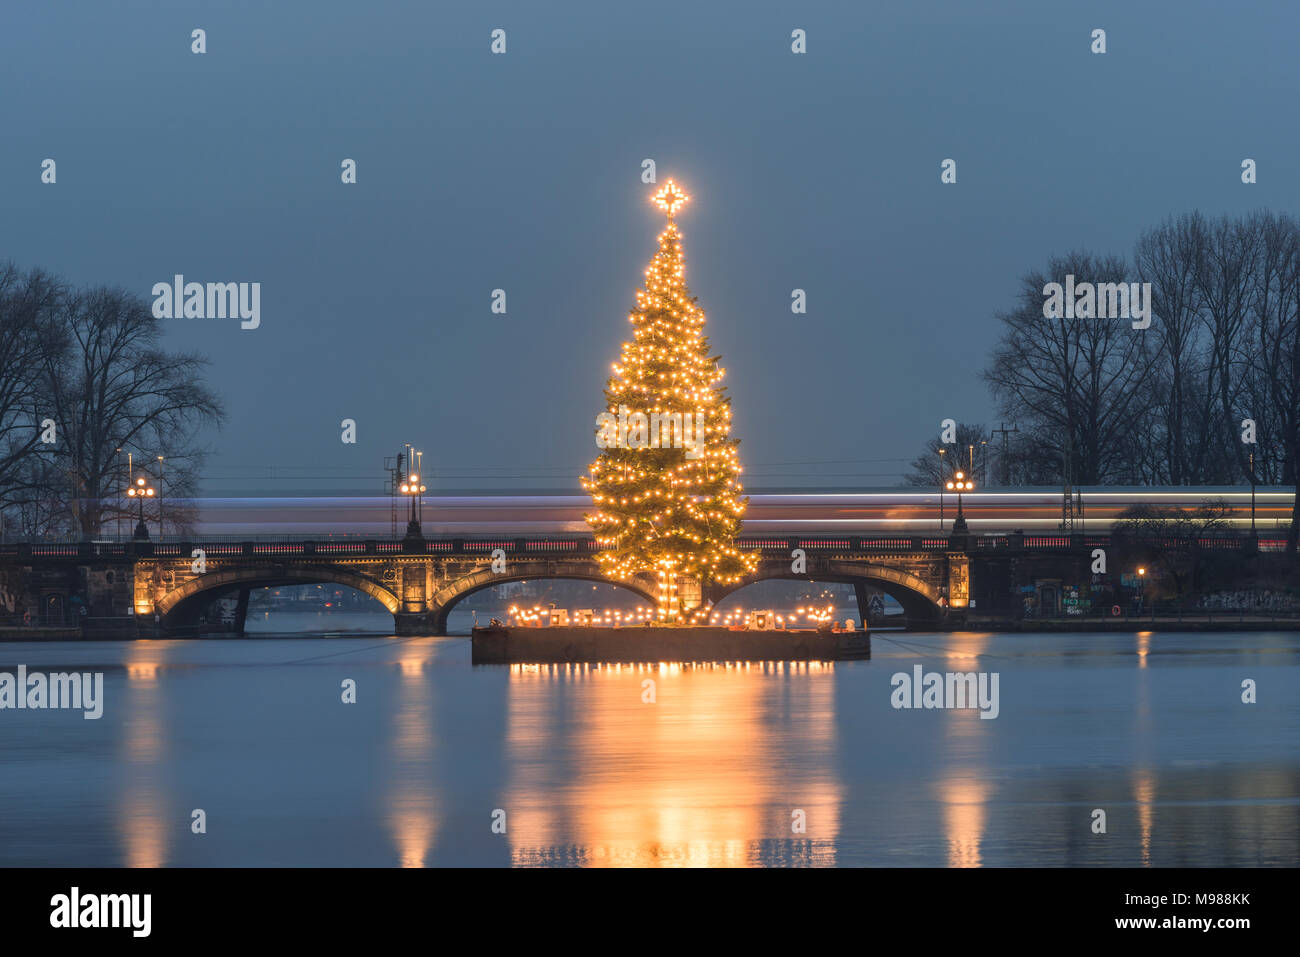 Alemania, Hamburgo Binnenalster, árbol de Navidad, Lombard Bridge Foto de stock